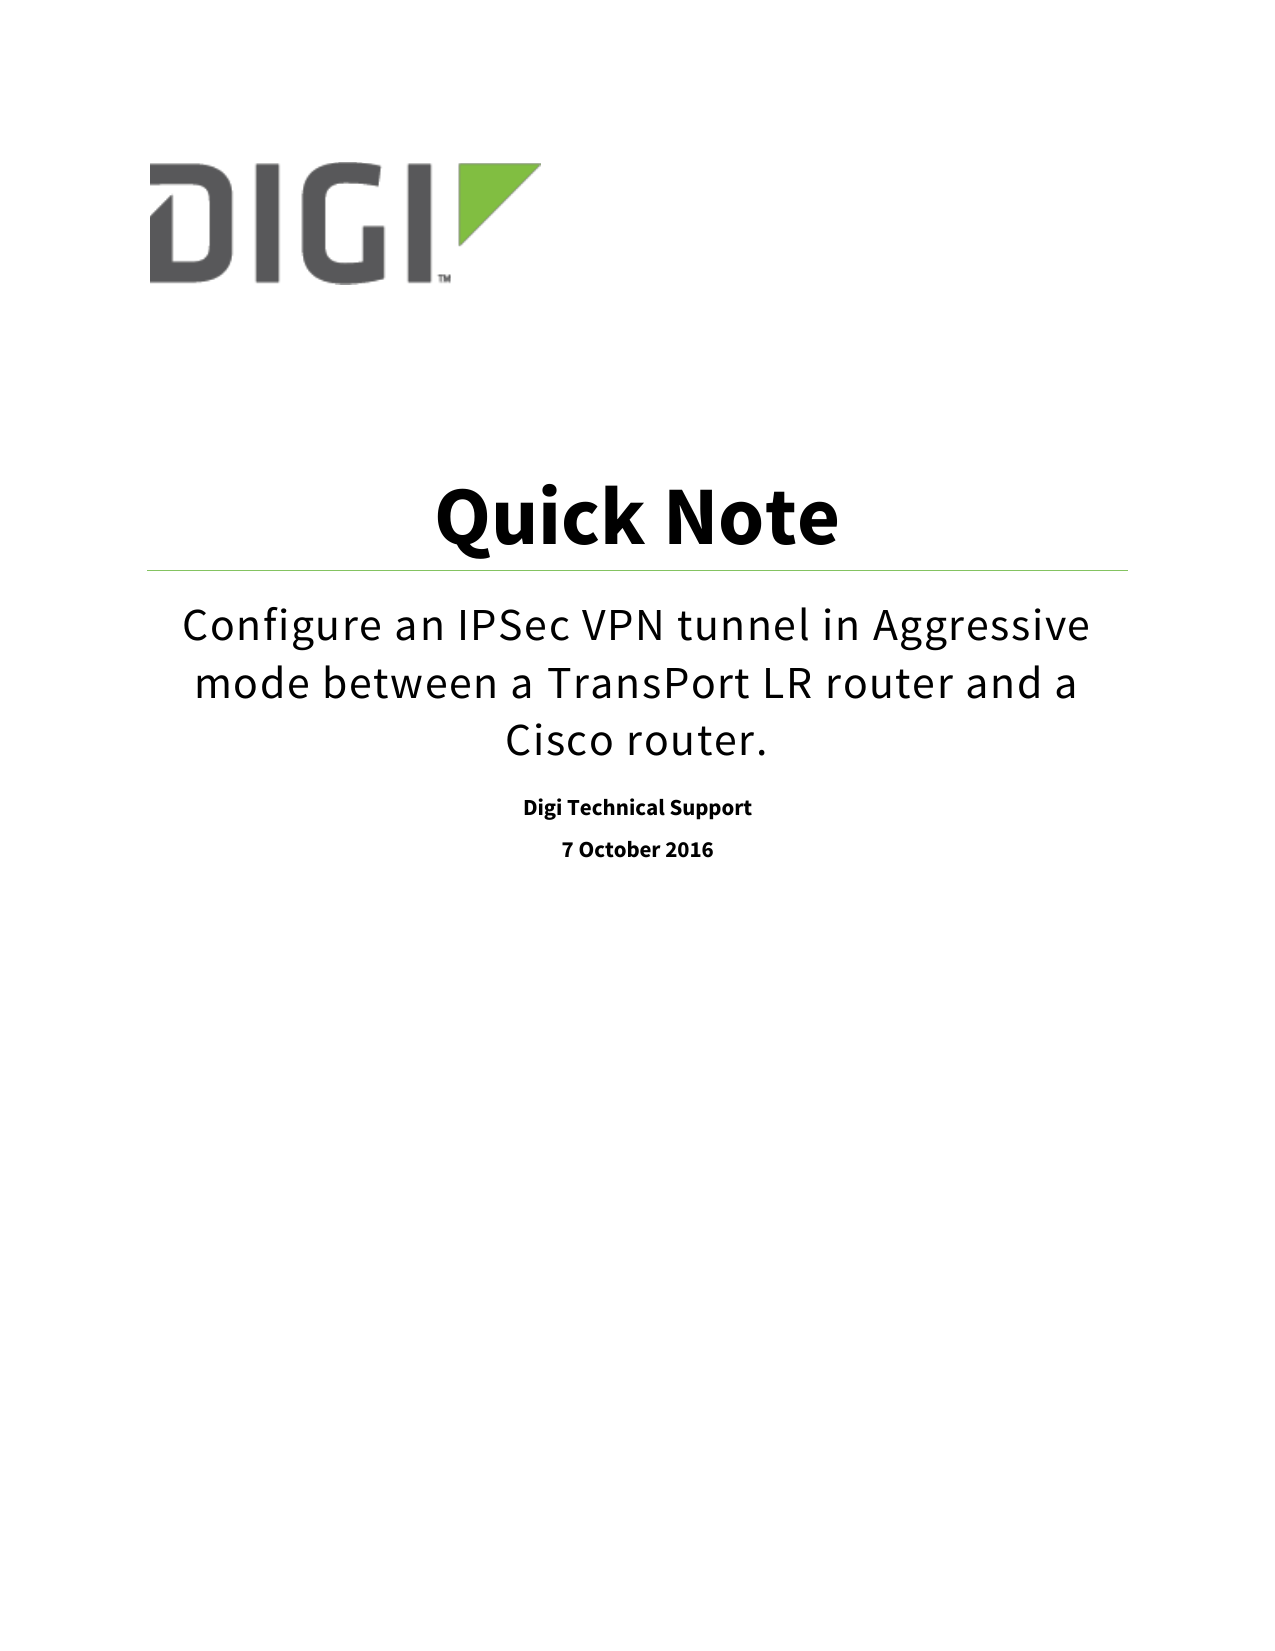 cisco ipsec vpn client aggessive mode configuration